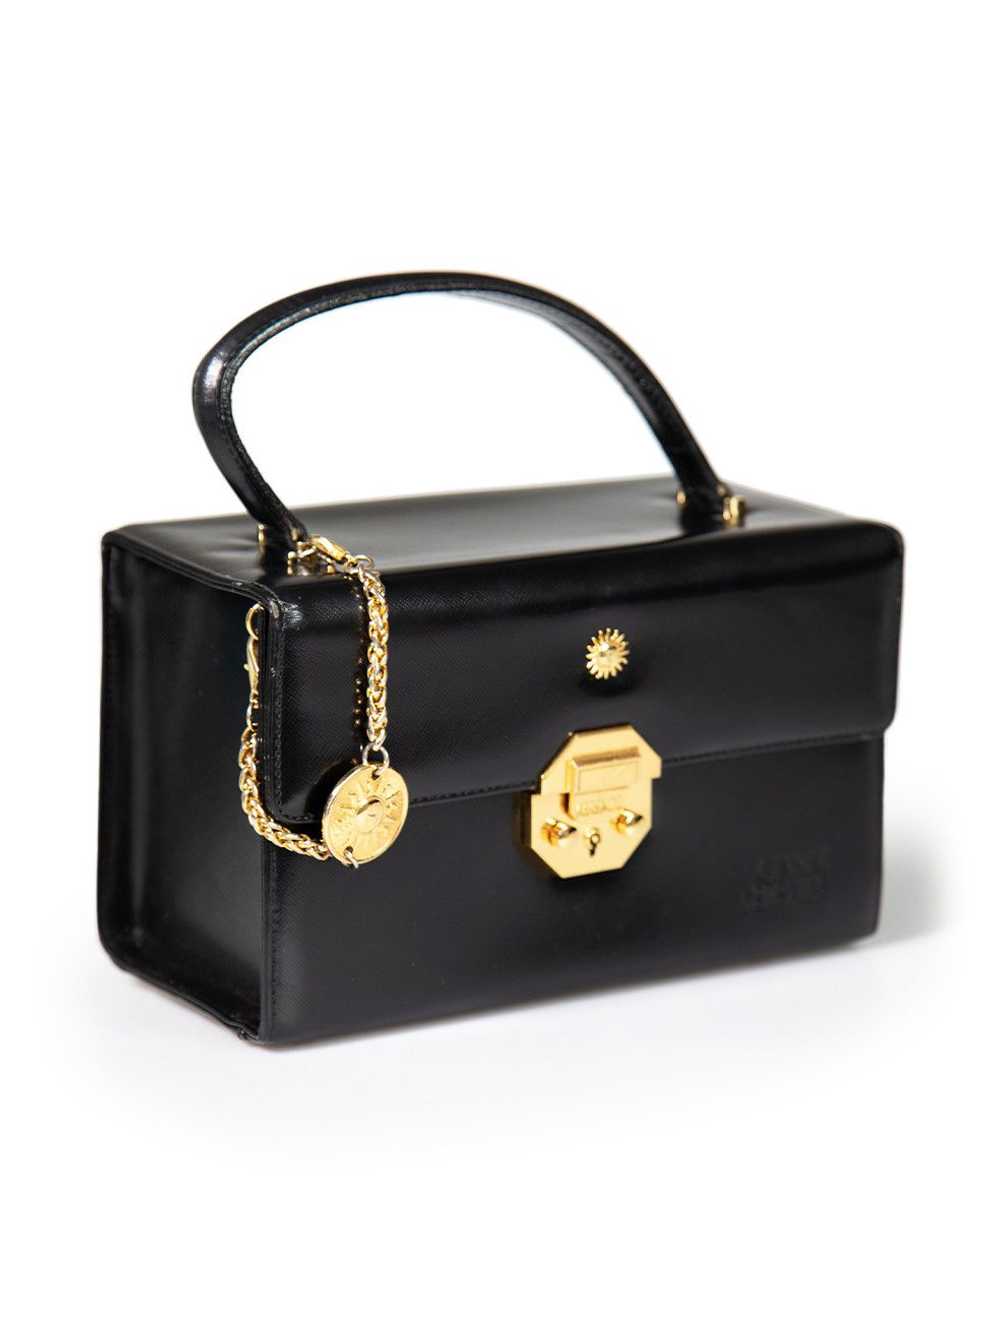 Versace Black Leather Vanity Top Handle Bag - image 2